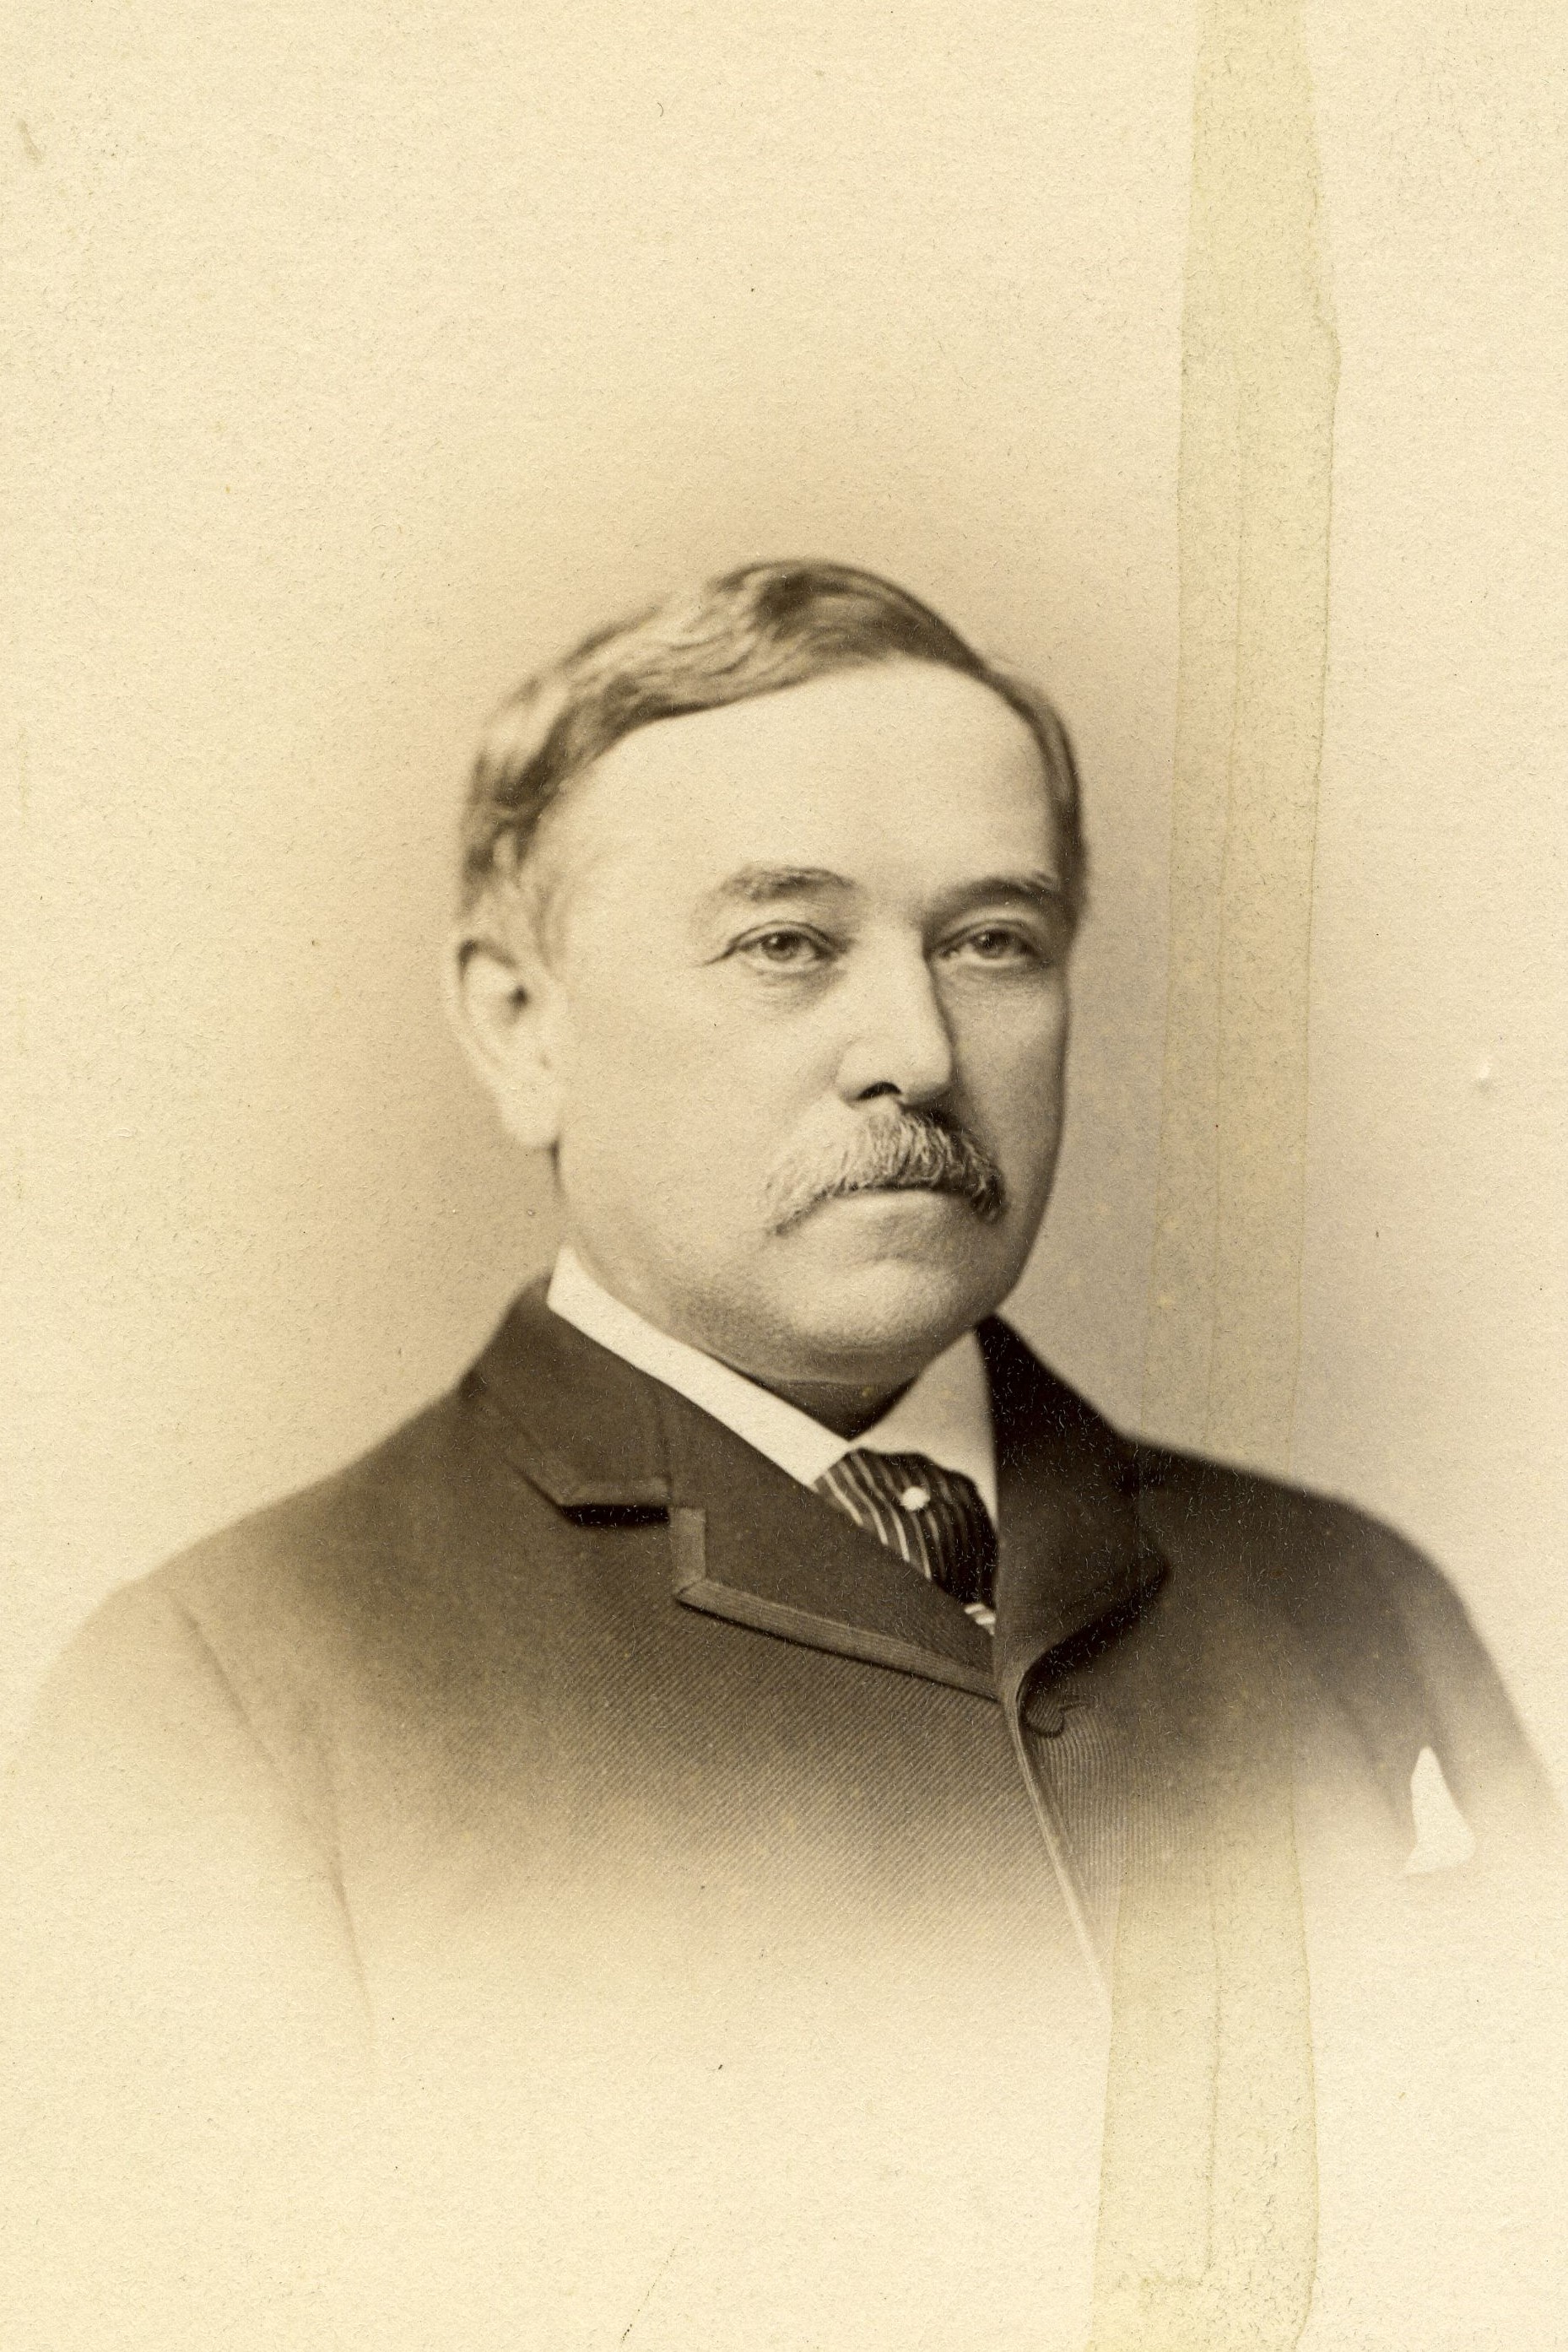 Member portrait of John H. Glover